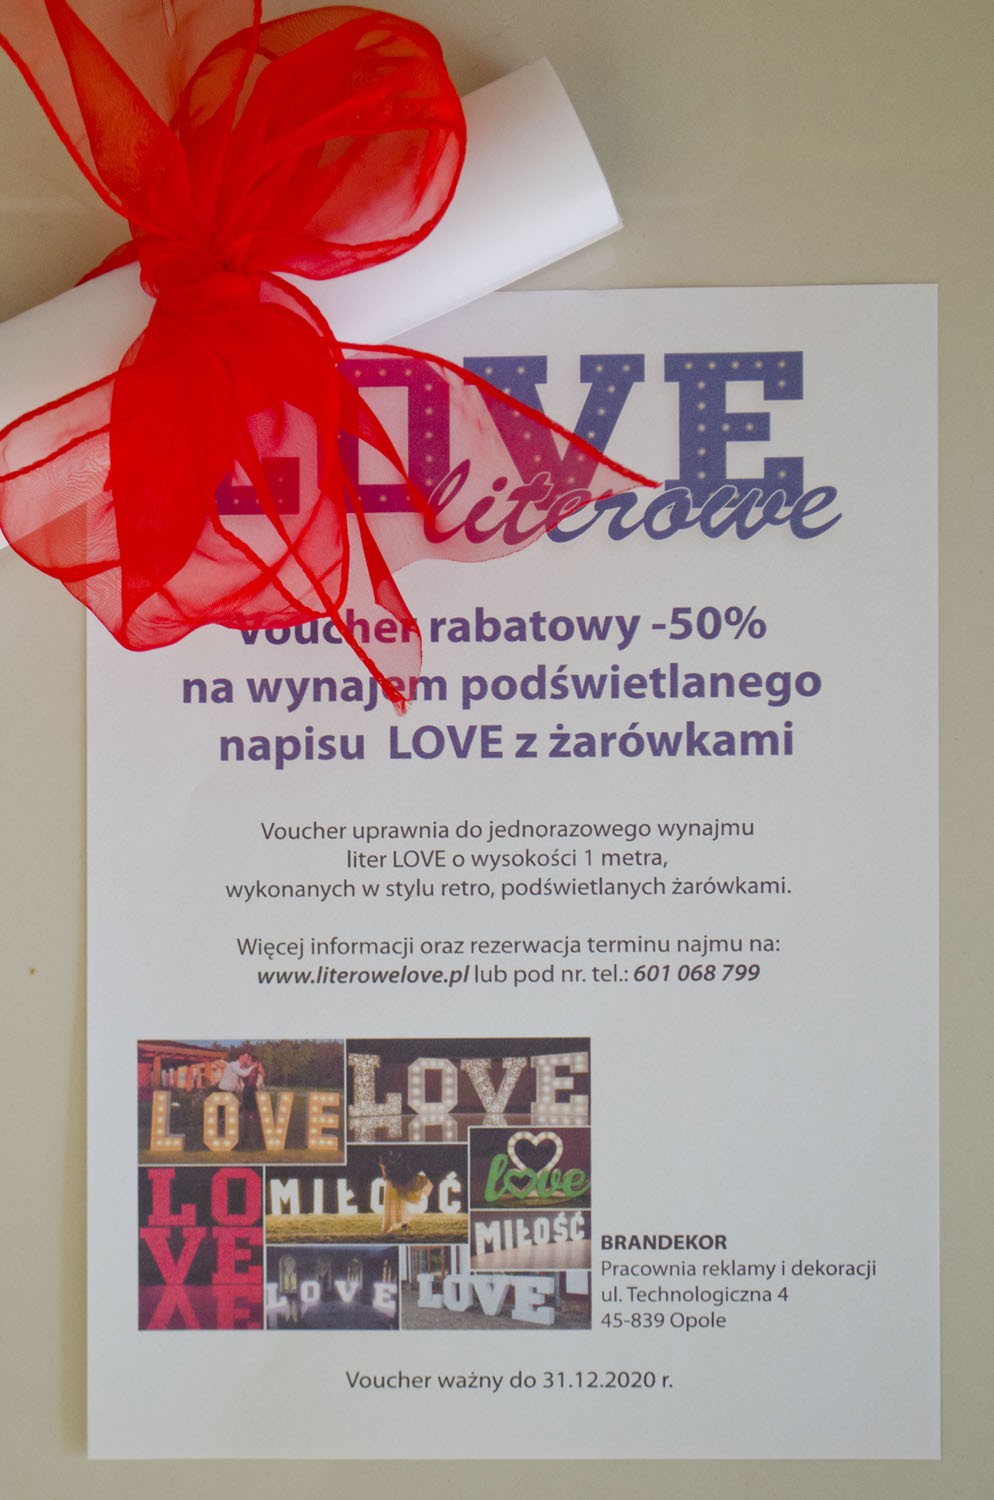 Voucher rabatowy -50% na wynajem podświetlanego napisu LOVE z żarówkami, ufundowany przez LITEROWELOVE.pl